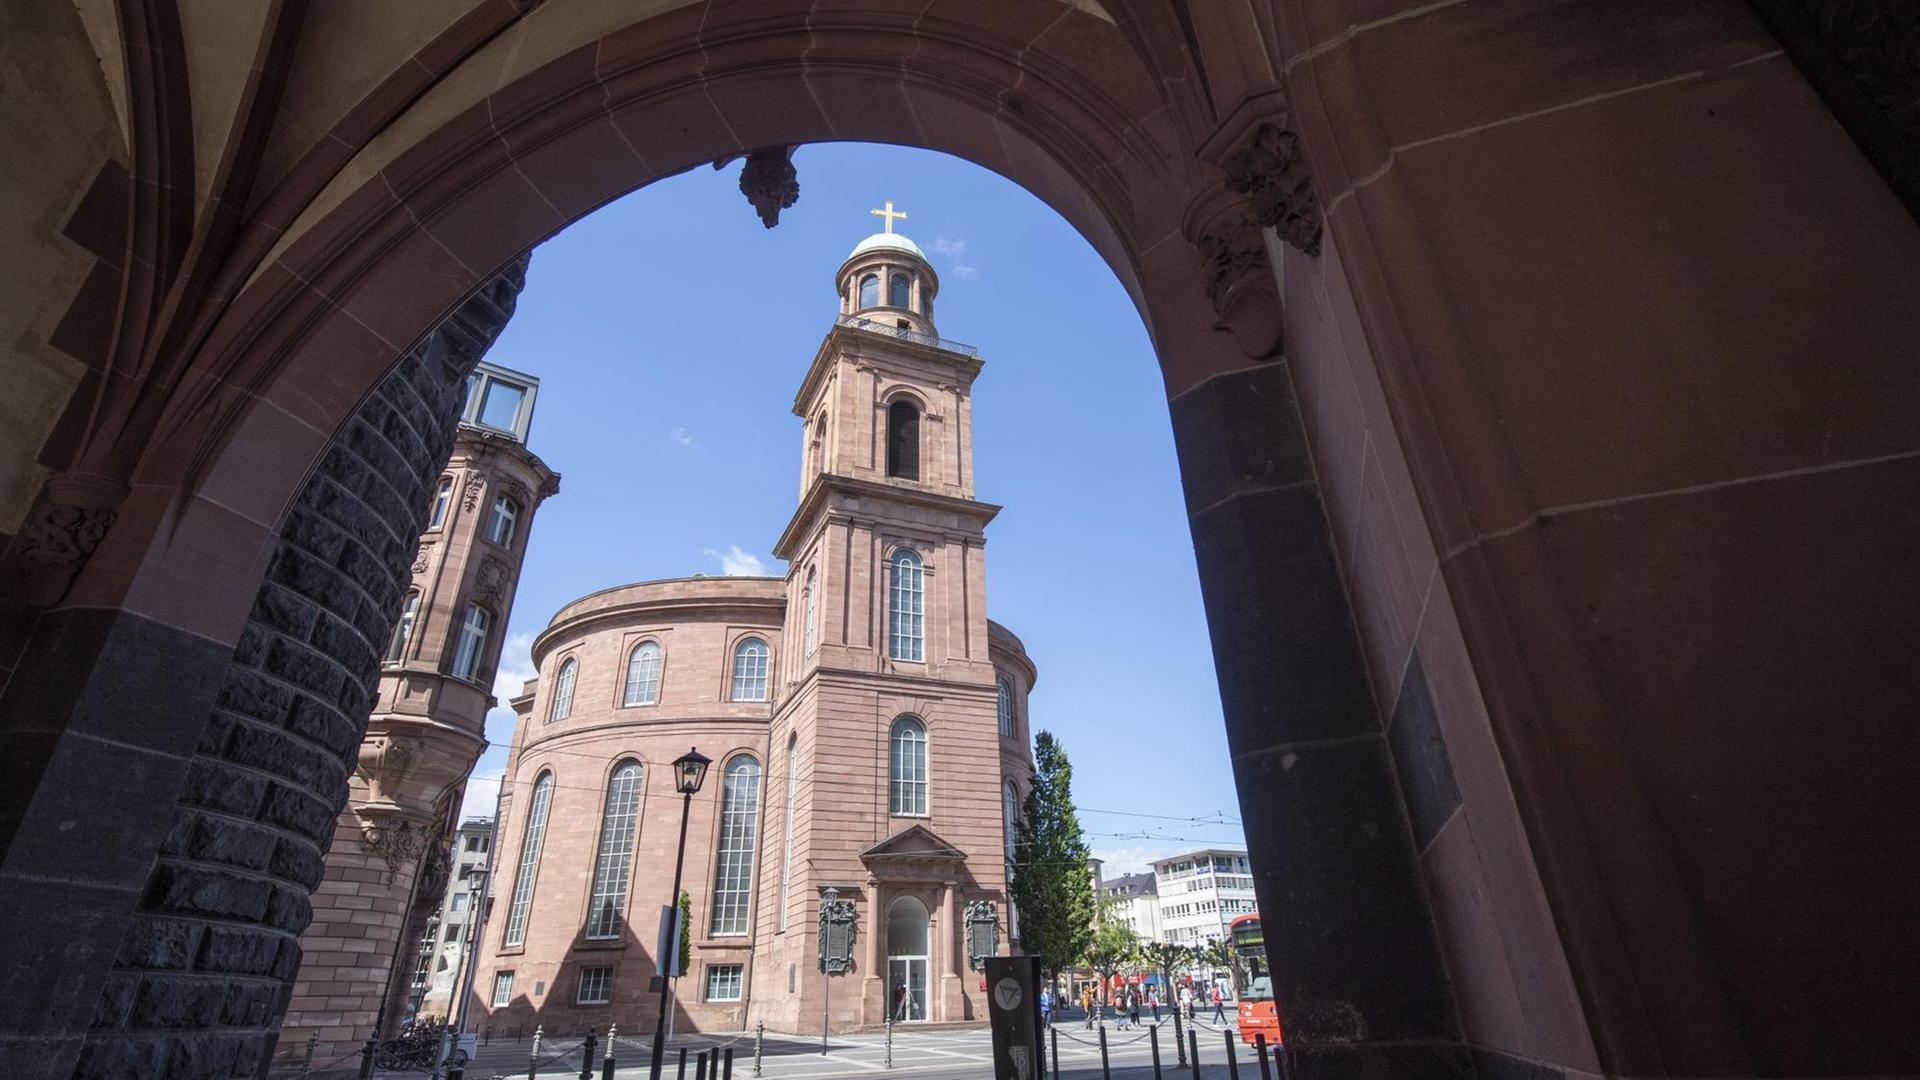 Außenansicht der Paulskirche in Frankfurt am Main. In den kommenden Jahren stehen an dem historischen Gebäude umfangreiche Sanierungsarbeiten an.